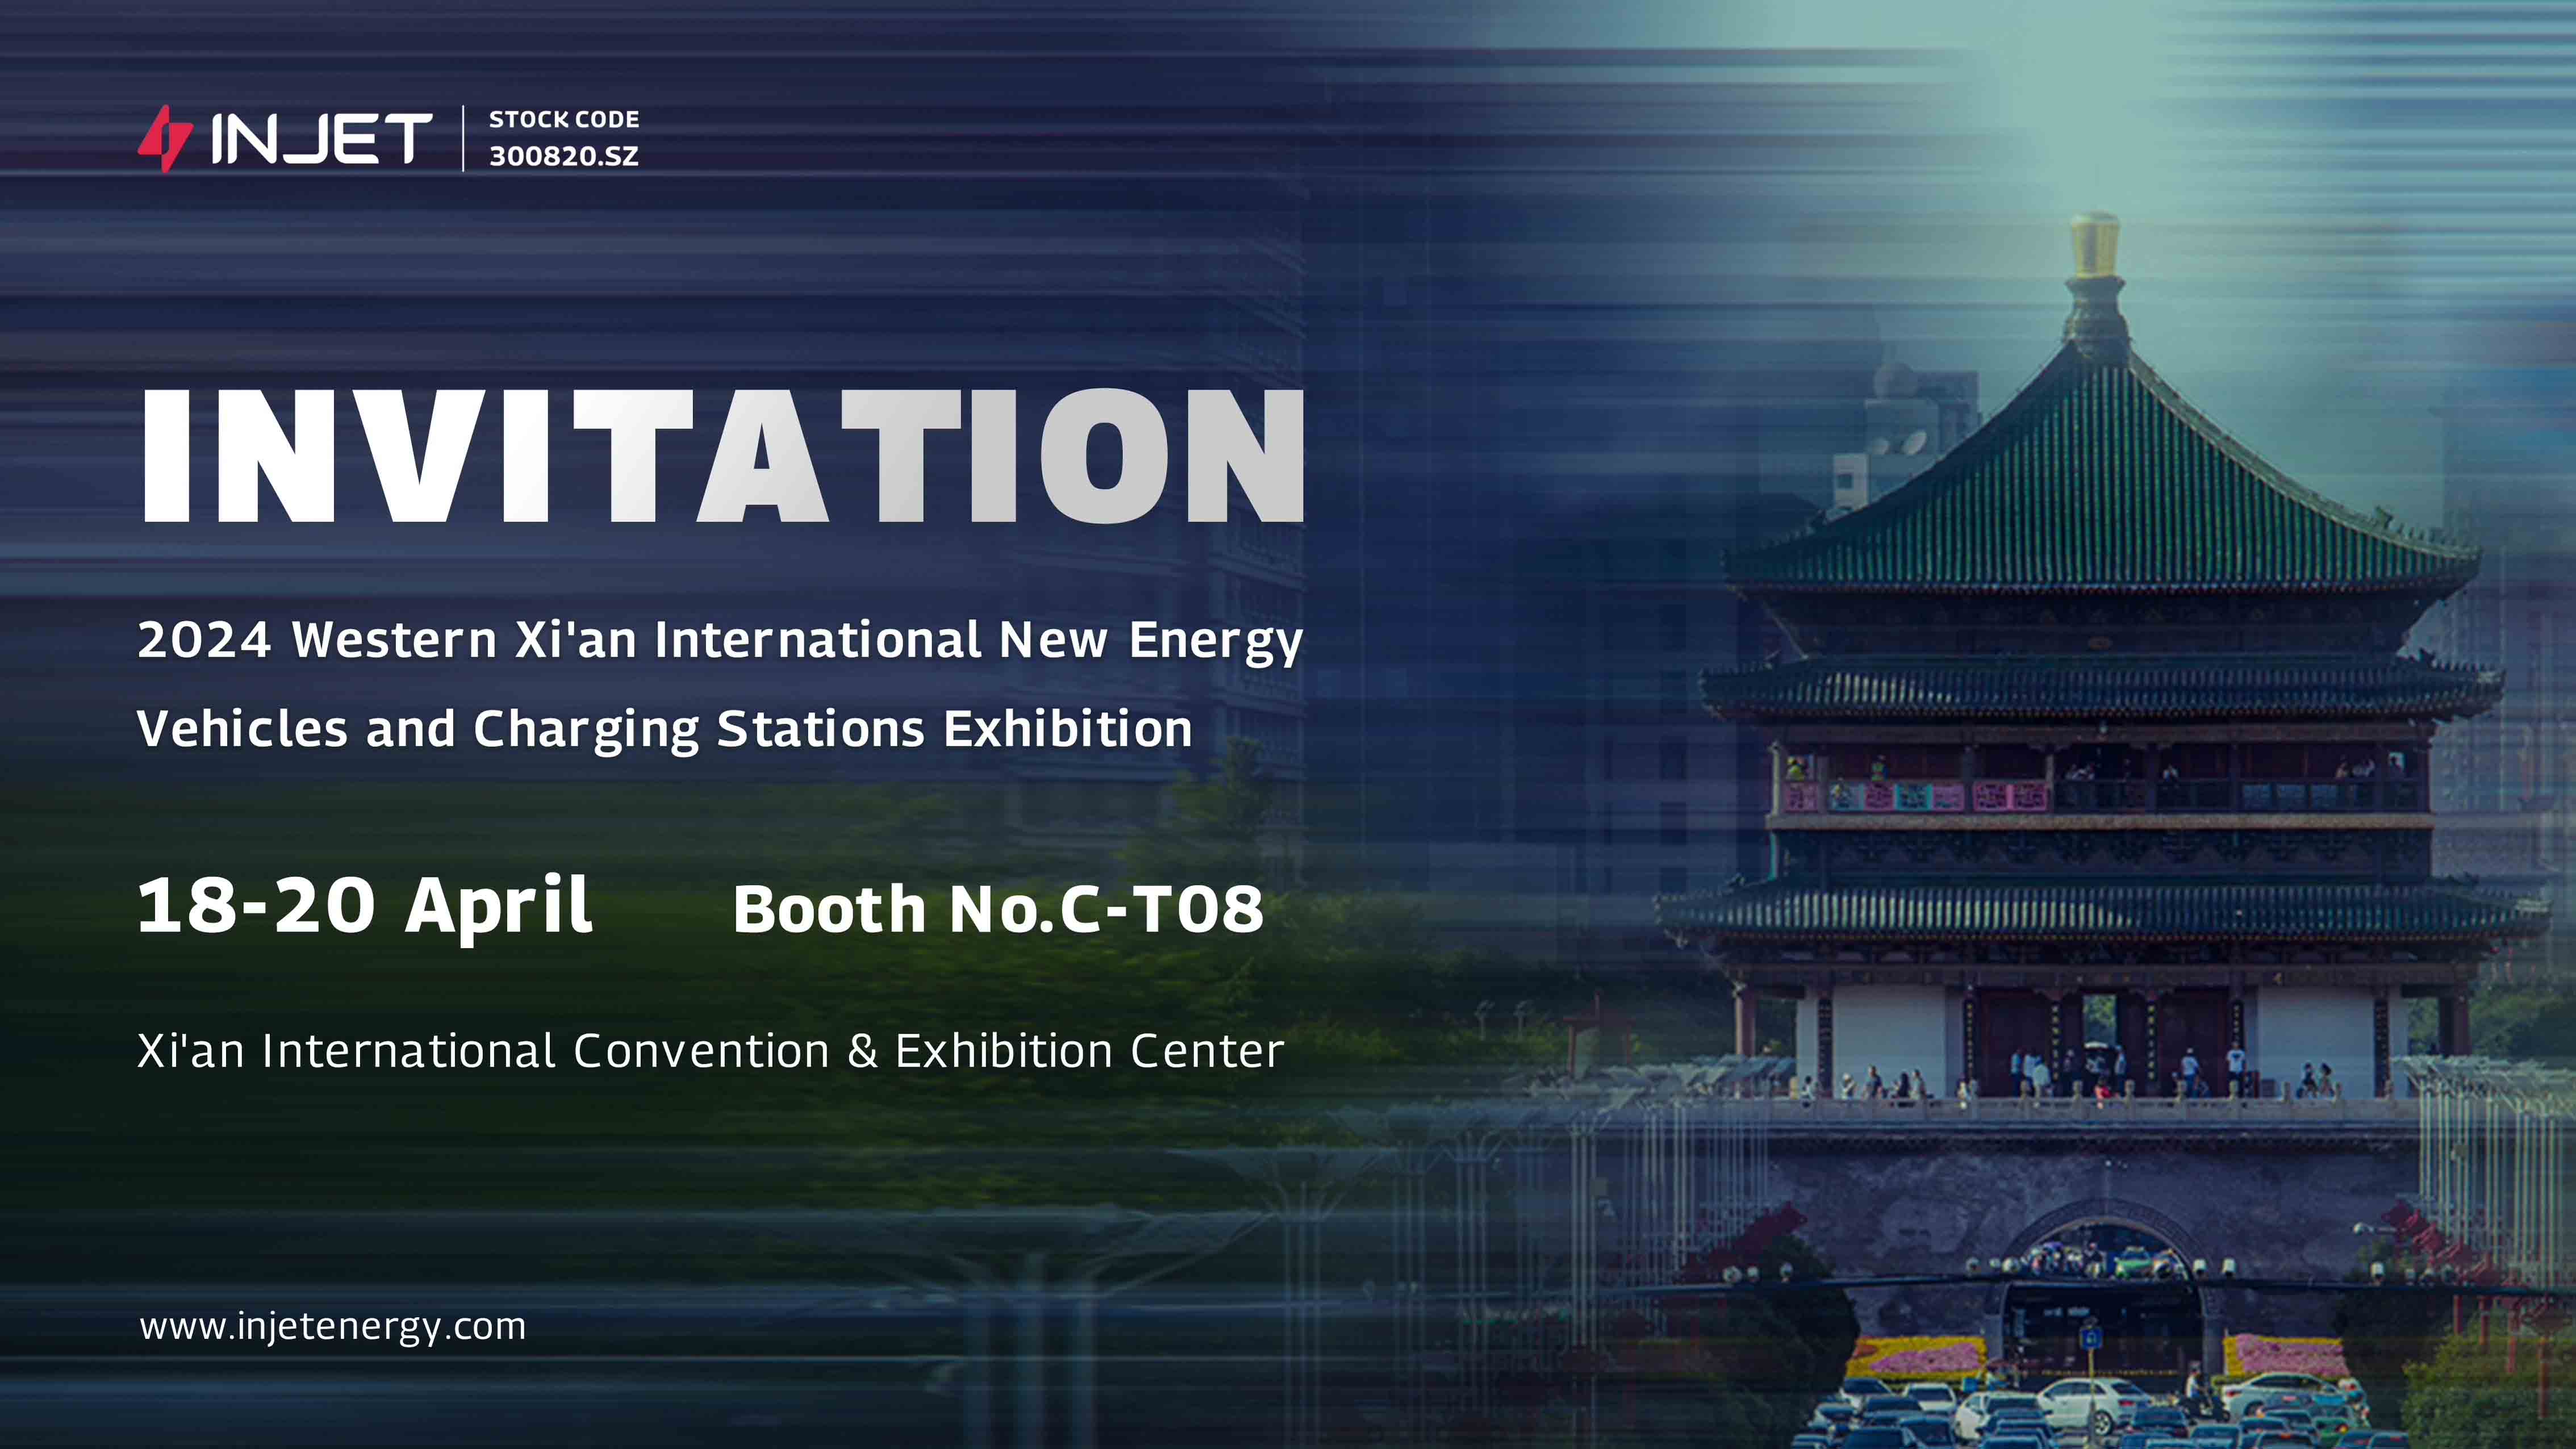 Uneix-te a nosaltres a l'exposició internacional de vehicles i estacions de càrrega de noves energies de Xi'an occidental 2024